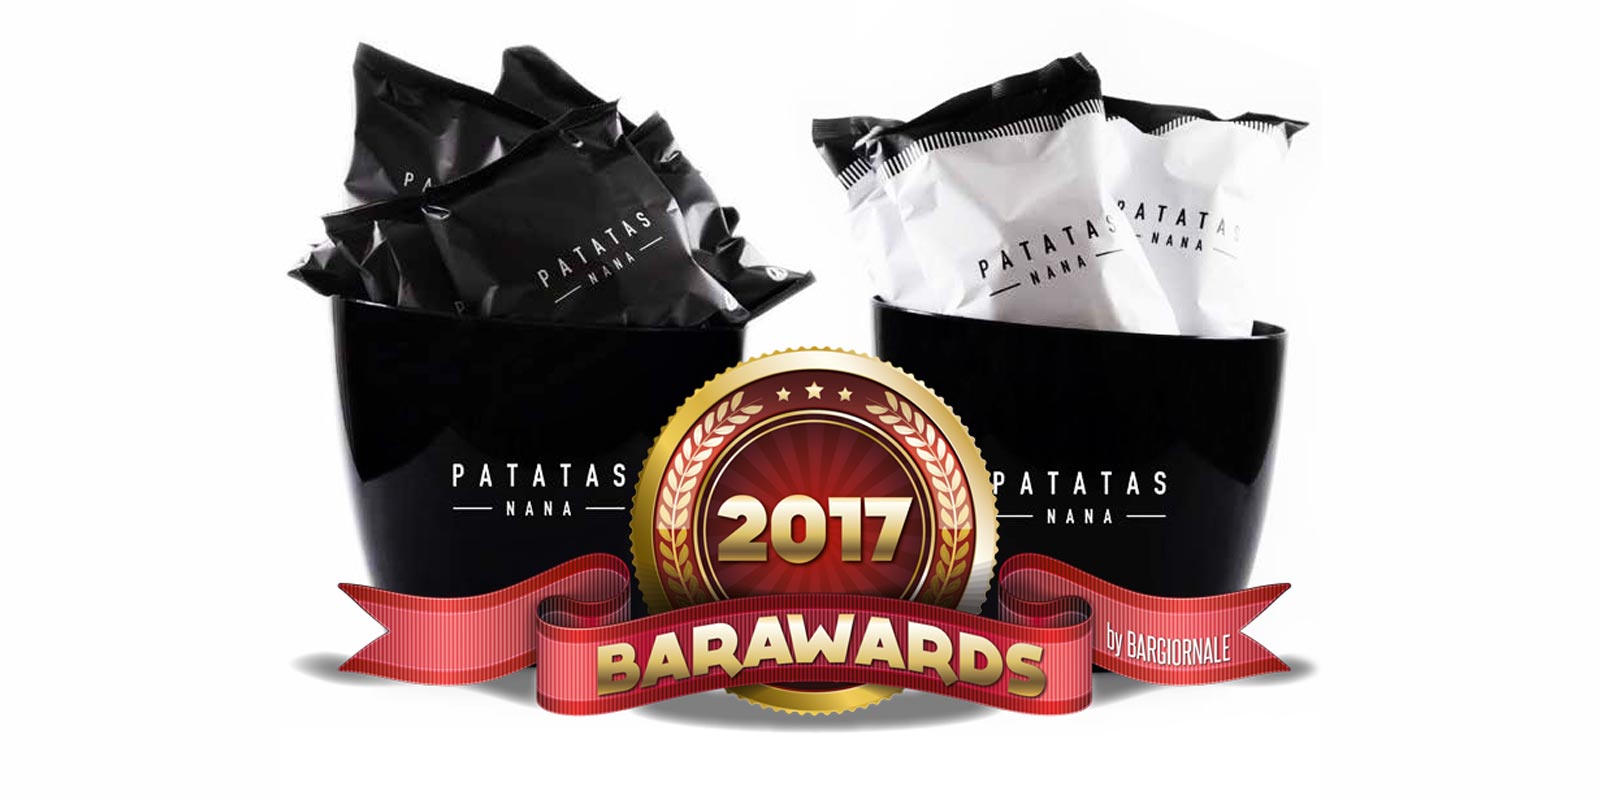 Barawards 2017: 1° Premio Innovazione